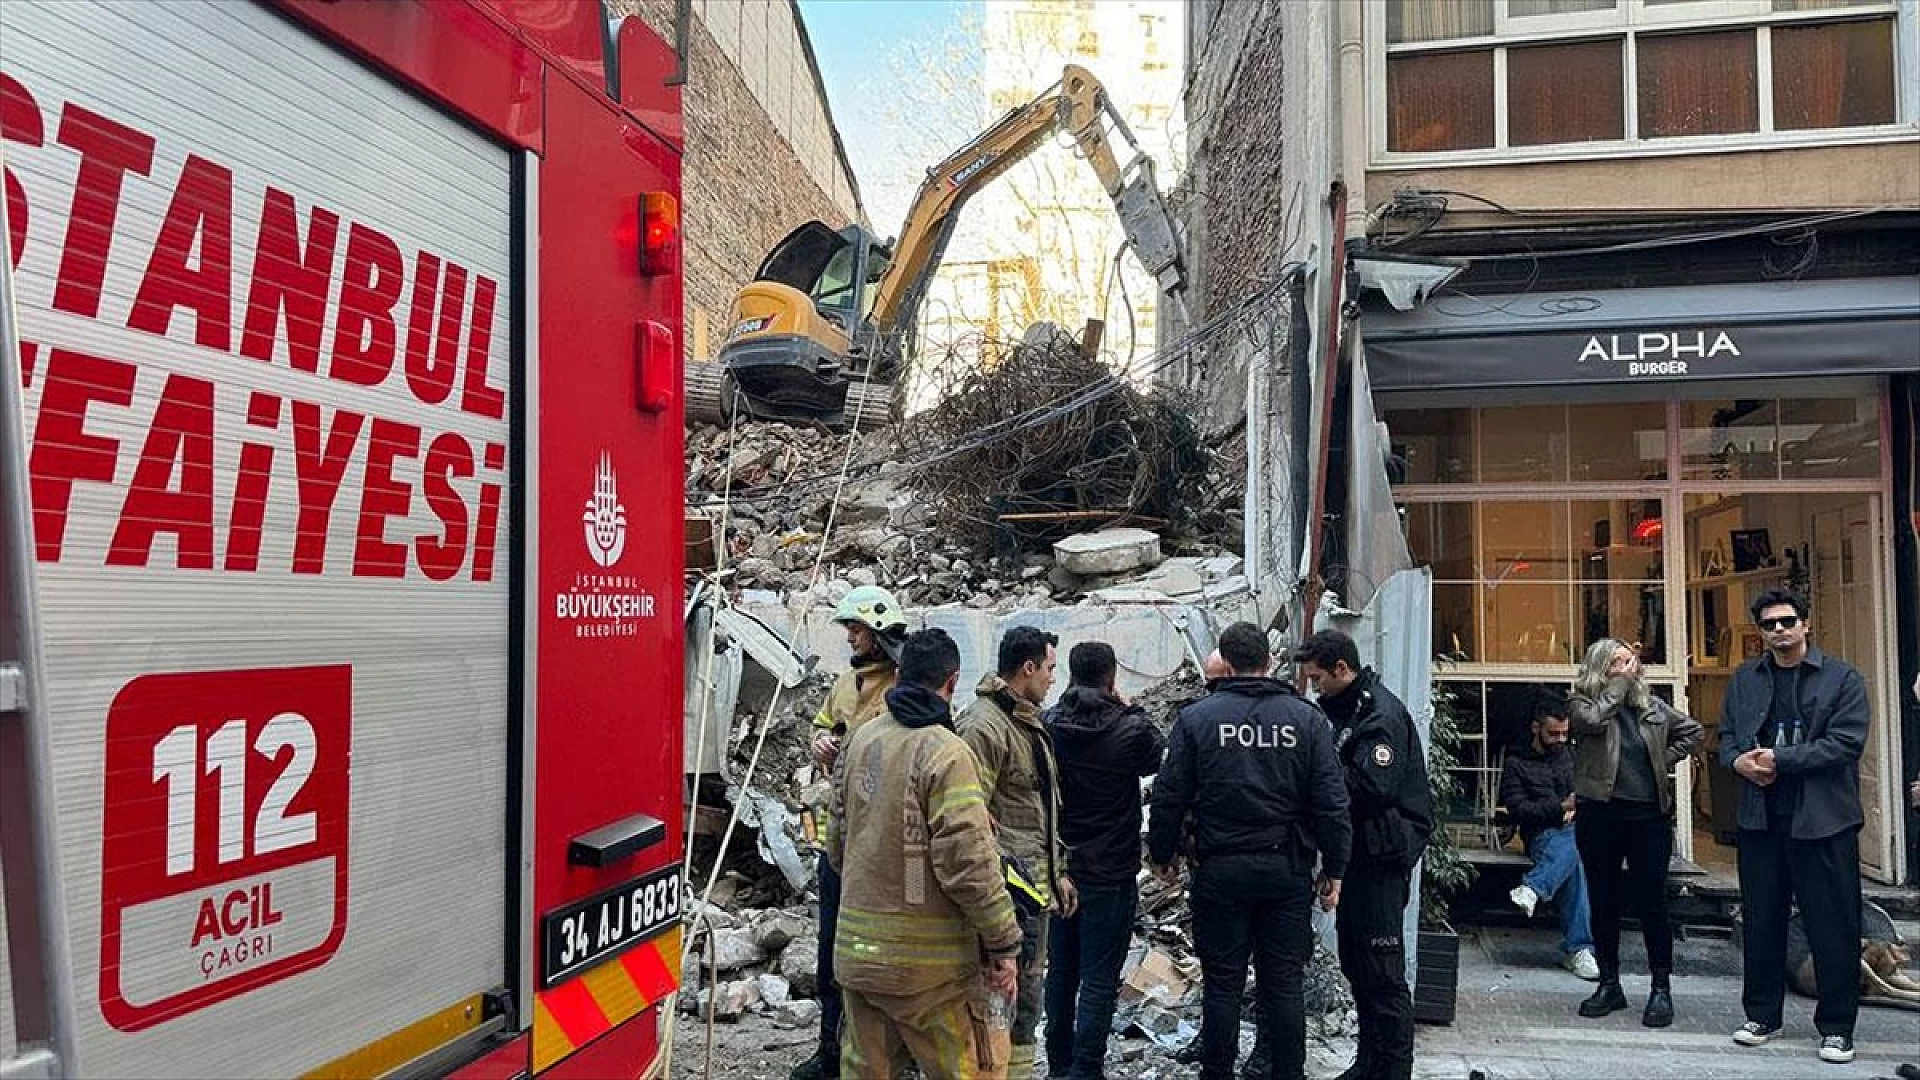 Kadıköy'de bir işçi çöken binanın altında kaldı